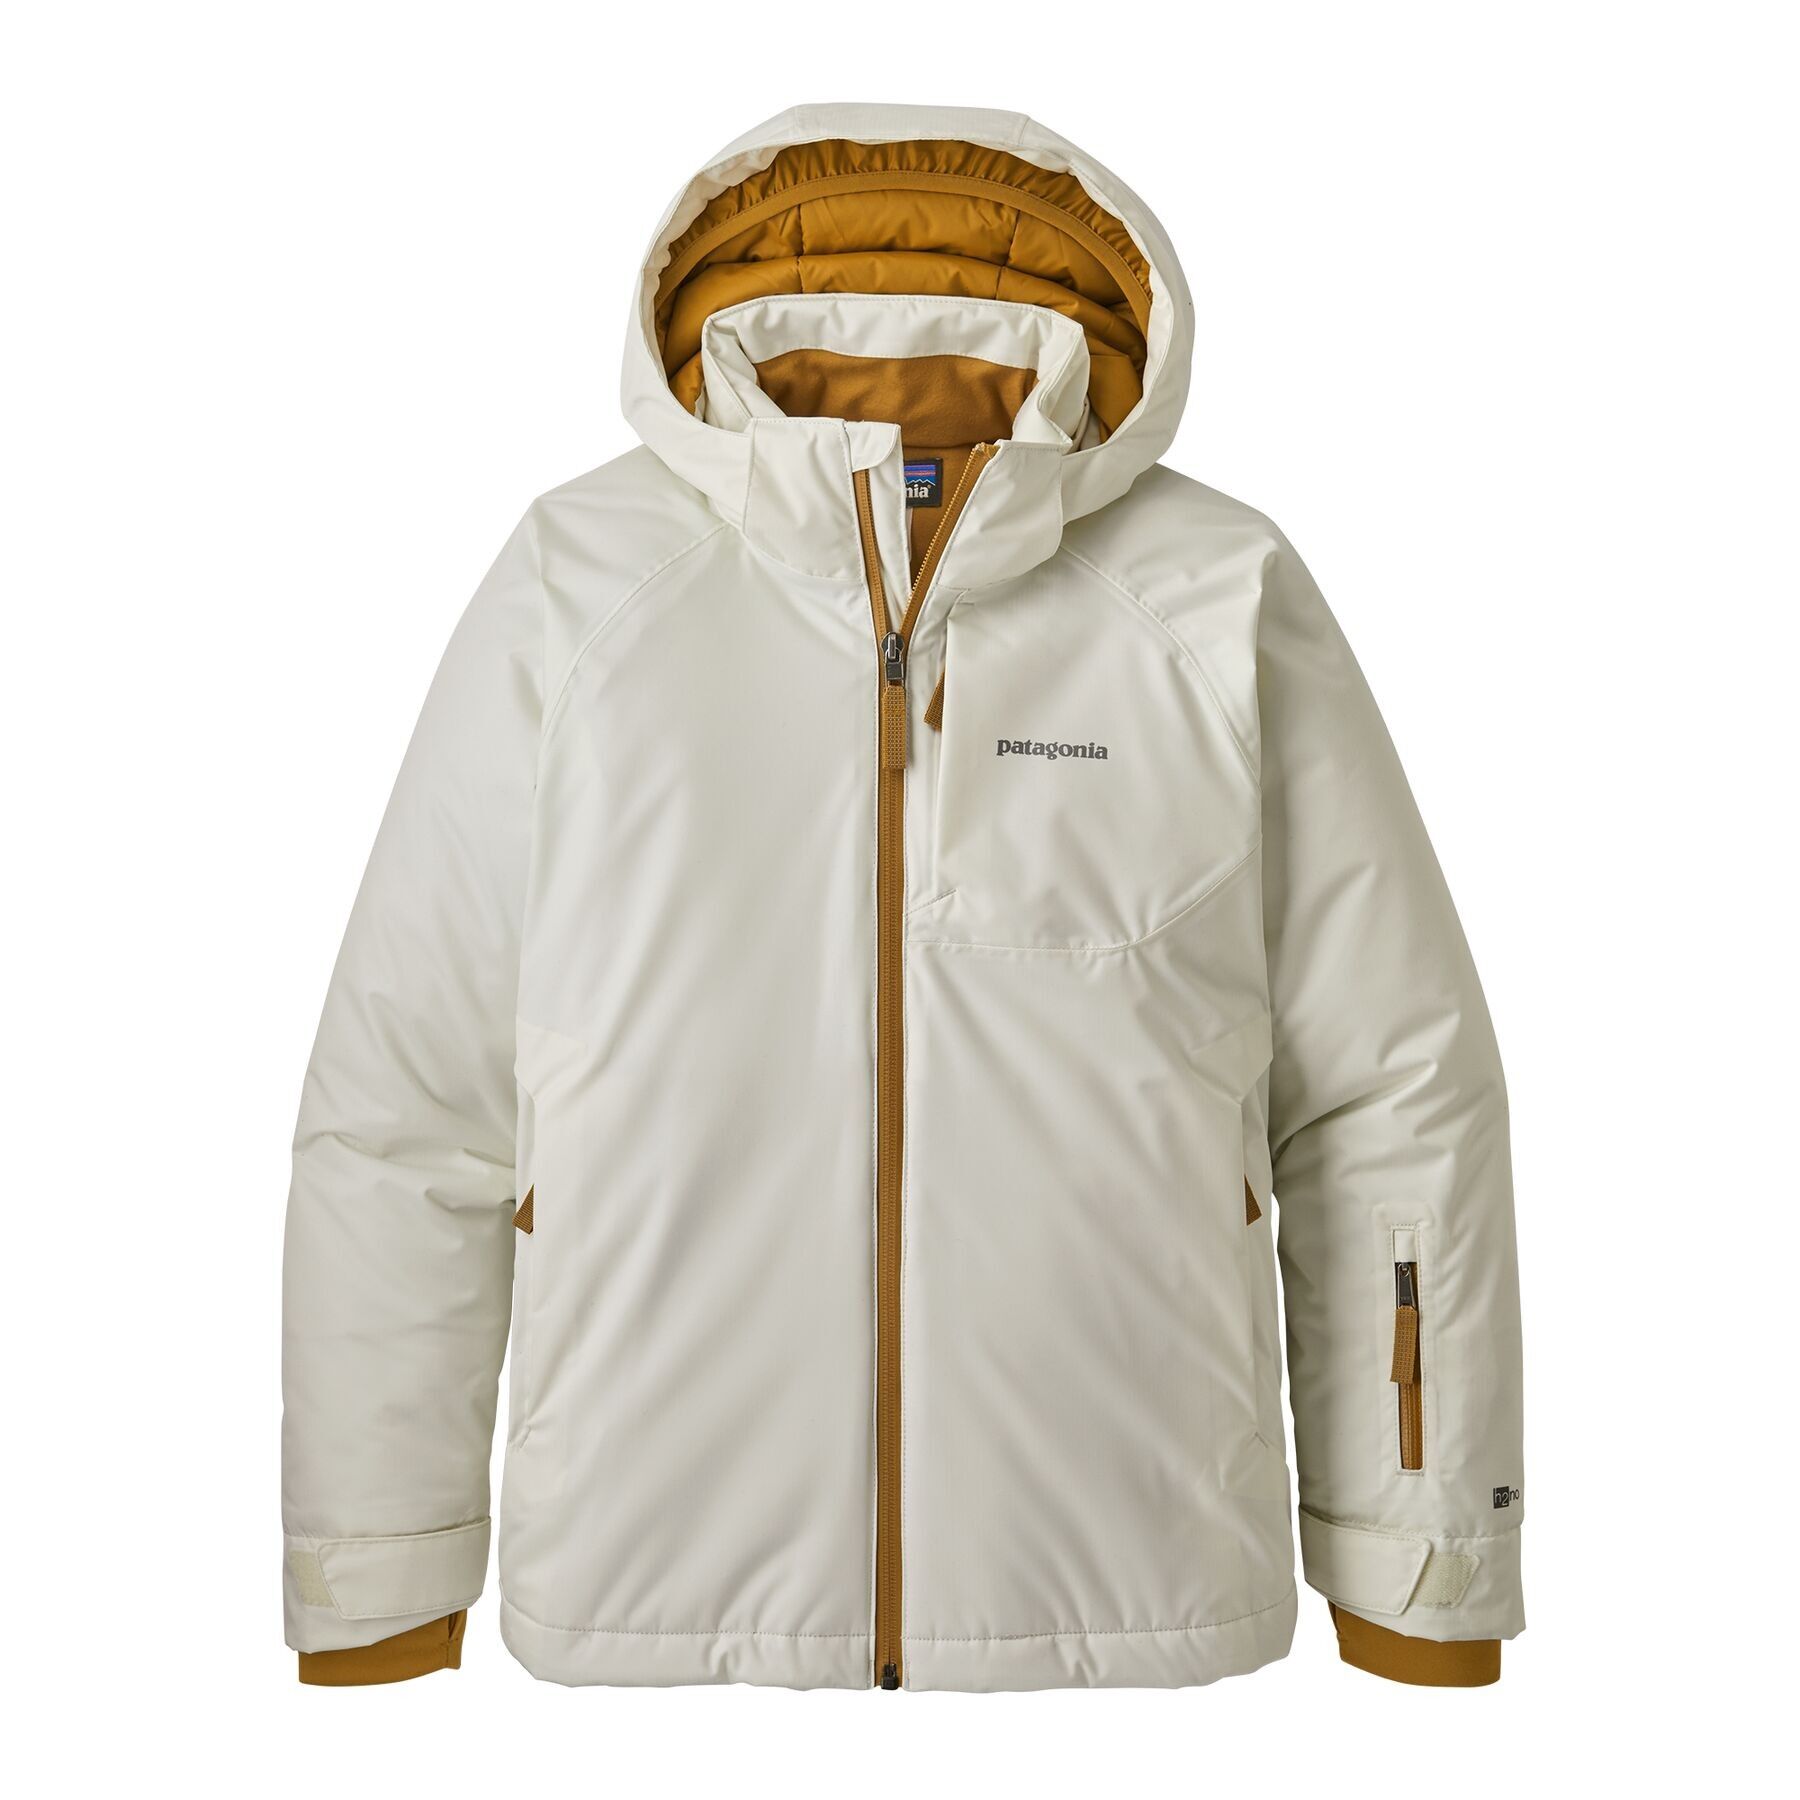 Patagonia - Girls' Snowbelle Jacket - Ski jacket - Girls